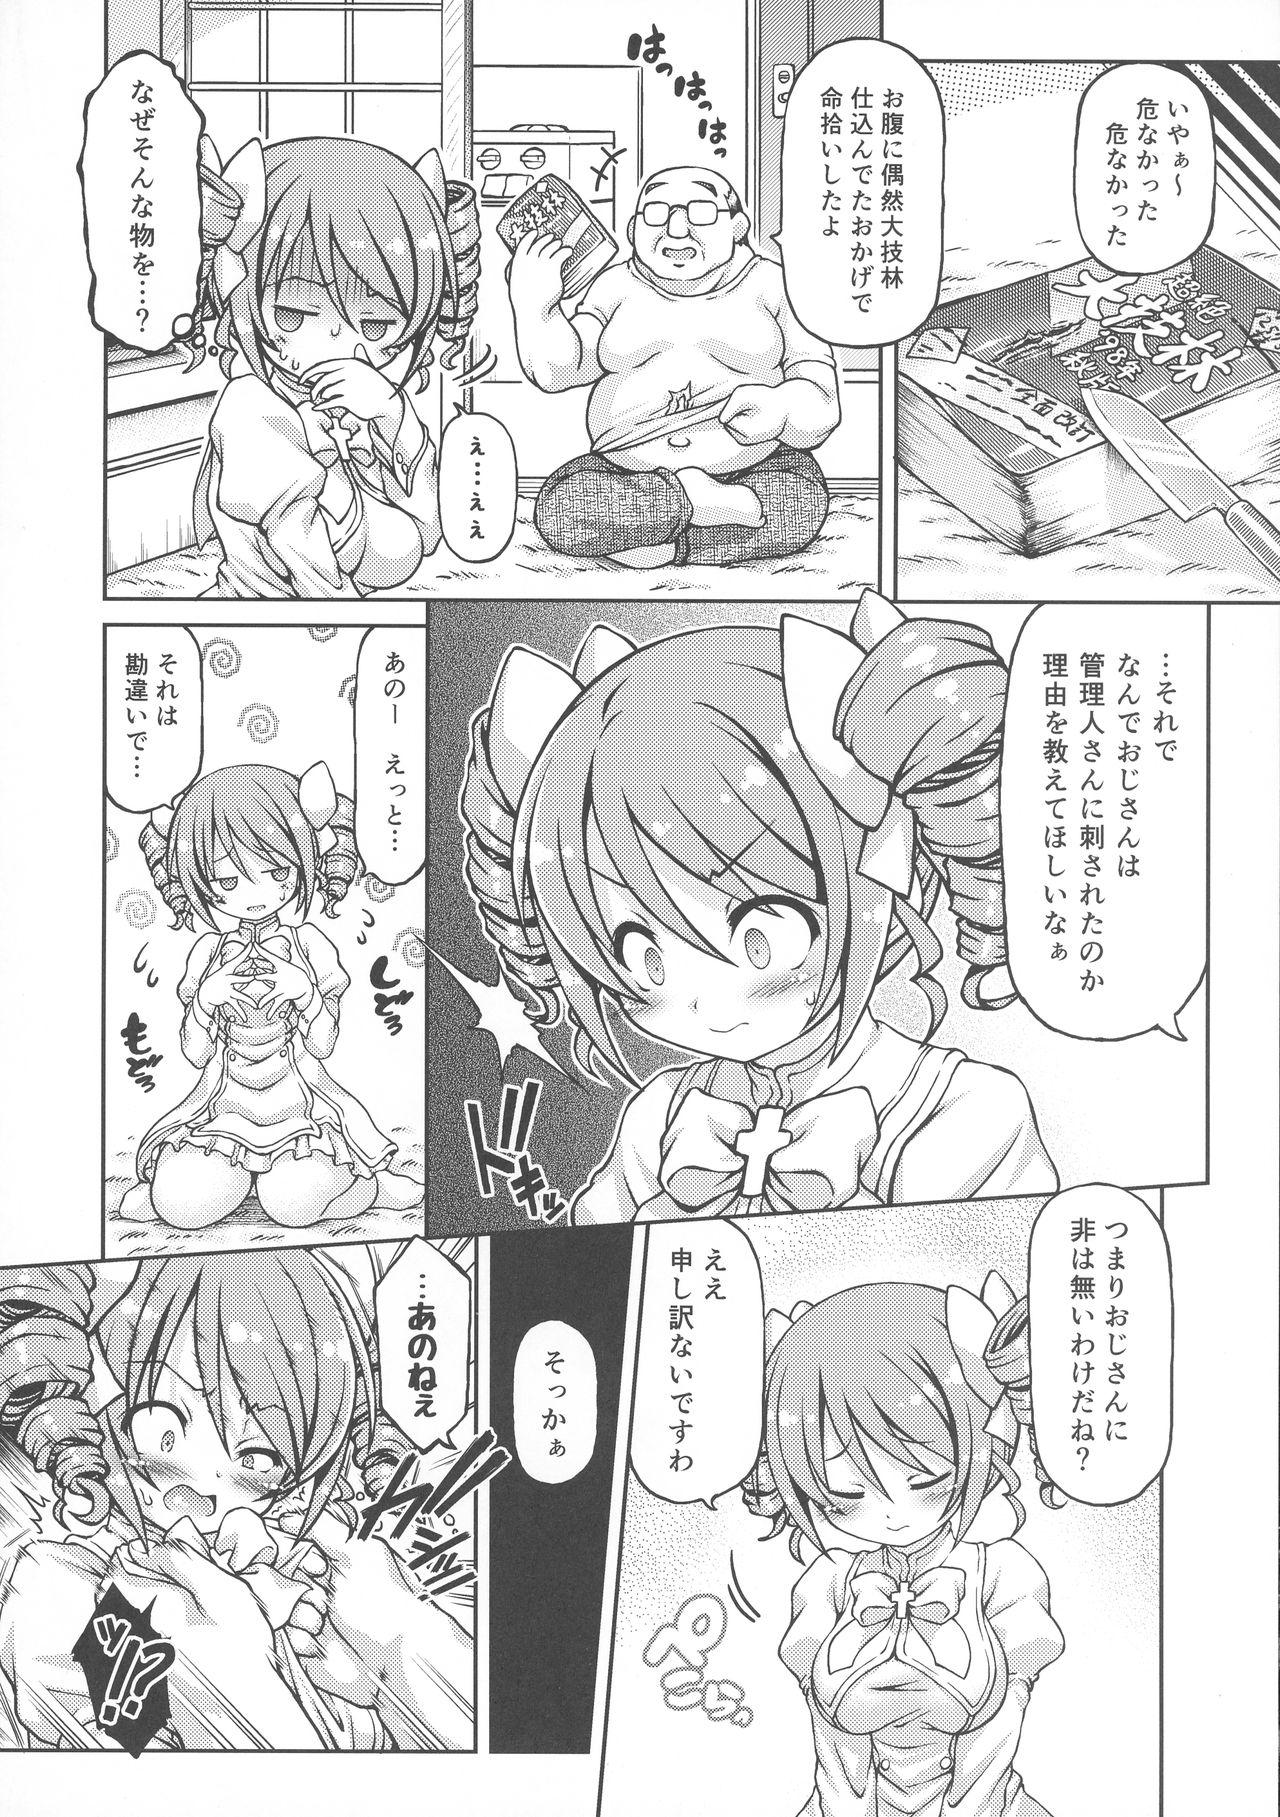 Deutsch Tenshi-chan DropOut - Jashin chan dropkick Large - Page 6